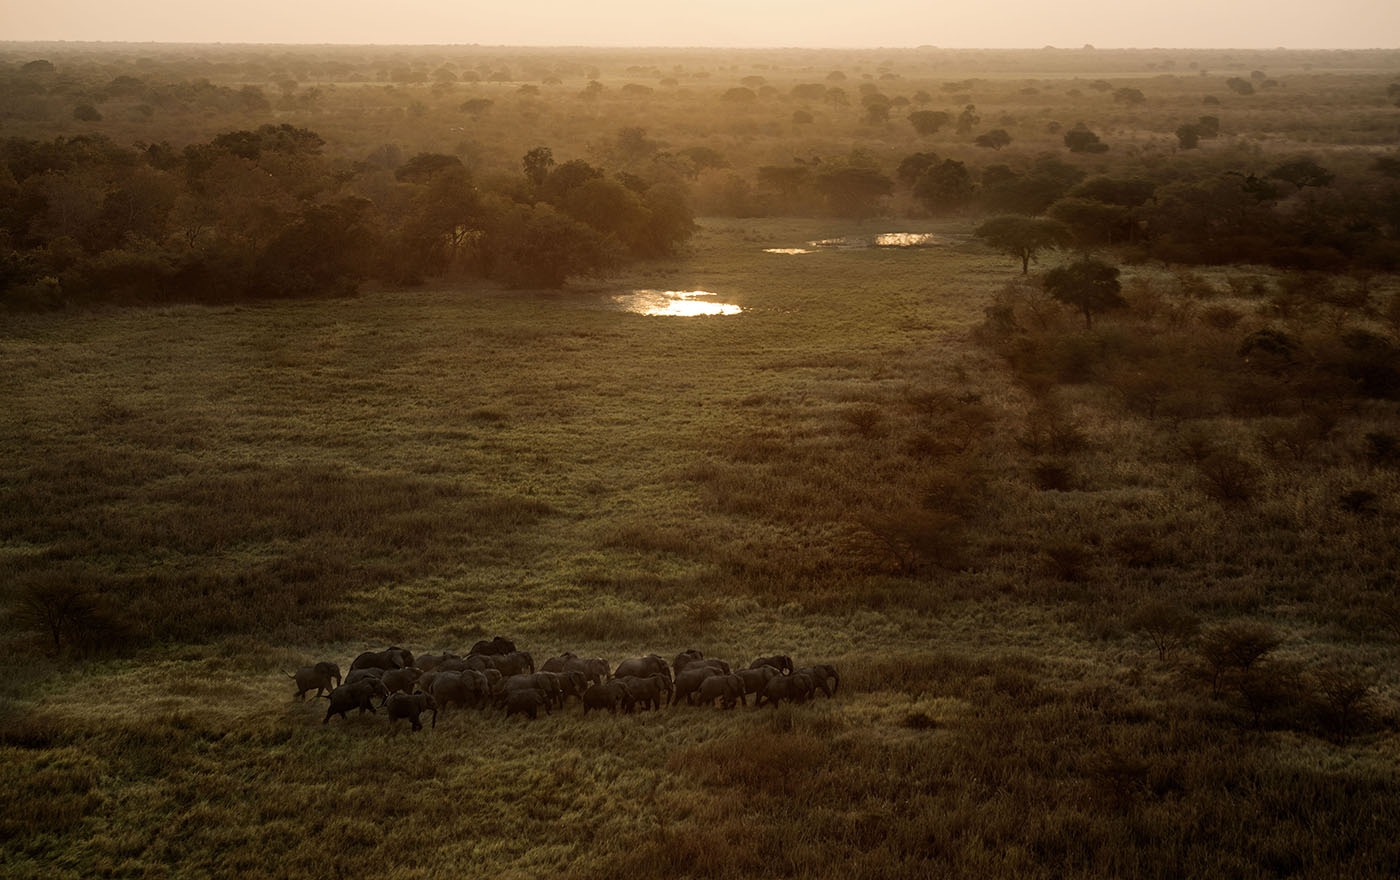 aerial view of herd of elephants, dusk